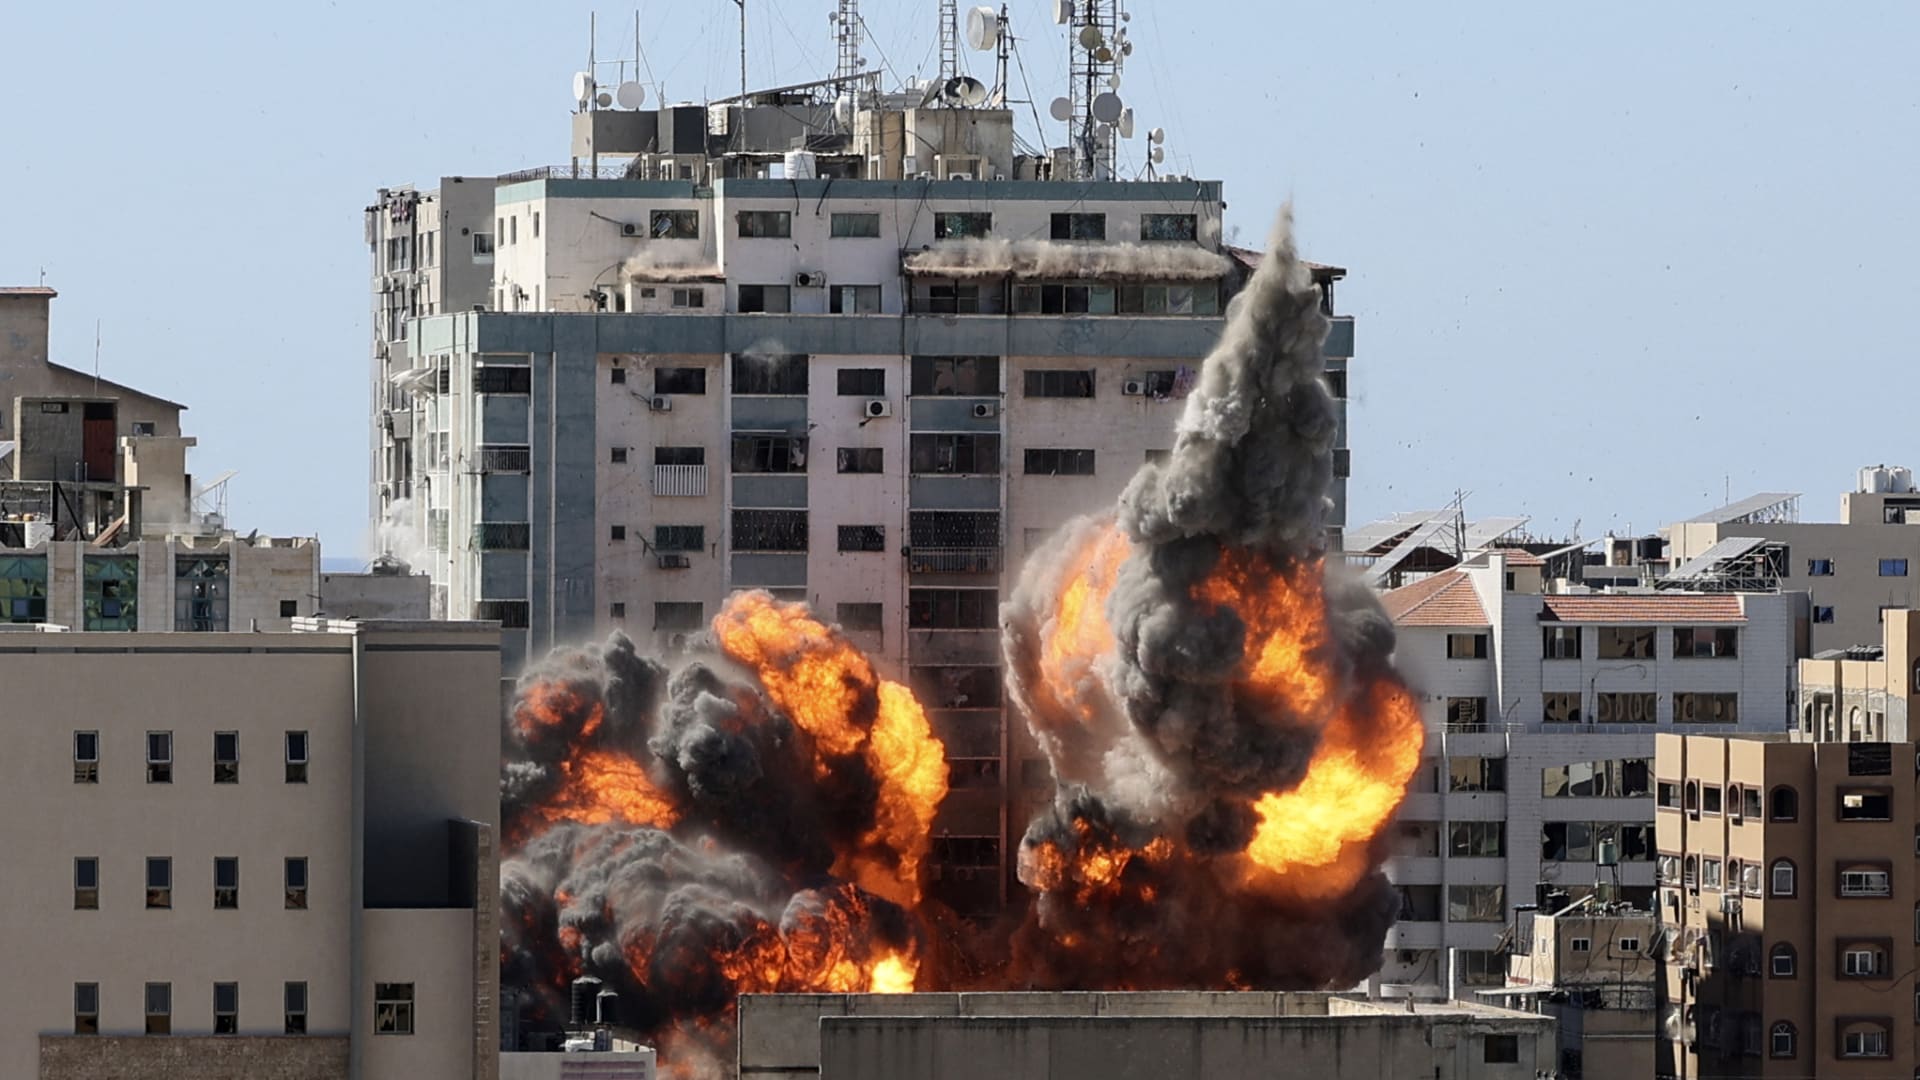 شاهد.. غارة جوية تسقط مبنى الجلاء في غزة وصواريخ فلسطينية تقصف إسرائيل